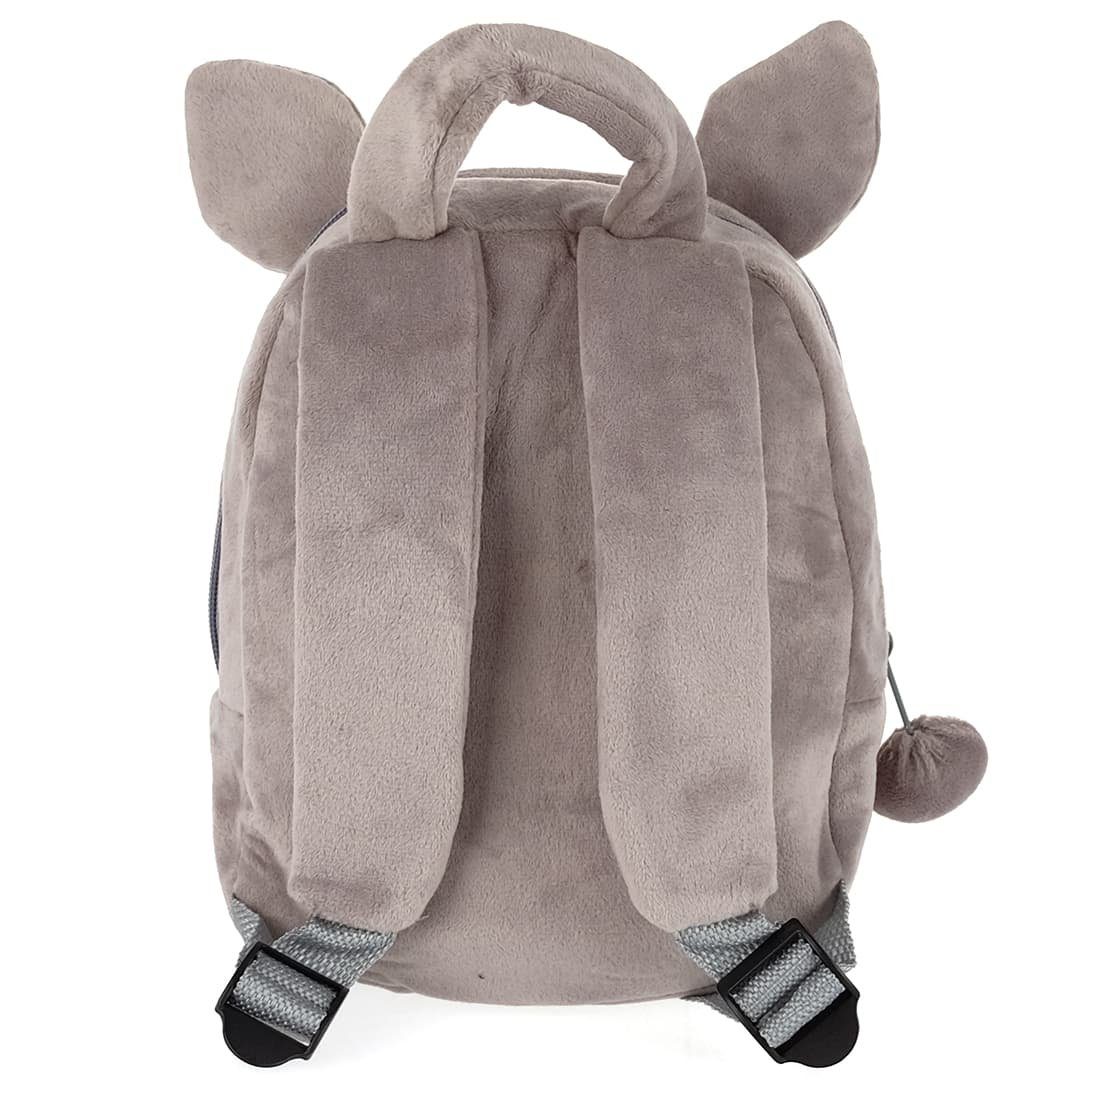 für Fans Totoro Rucksack Rucksack in Kinder Plüsch, Daypack GalaxyCat kleine aus Form Totoro weichem Kinder